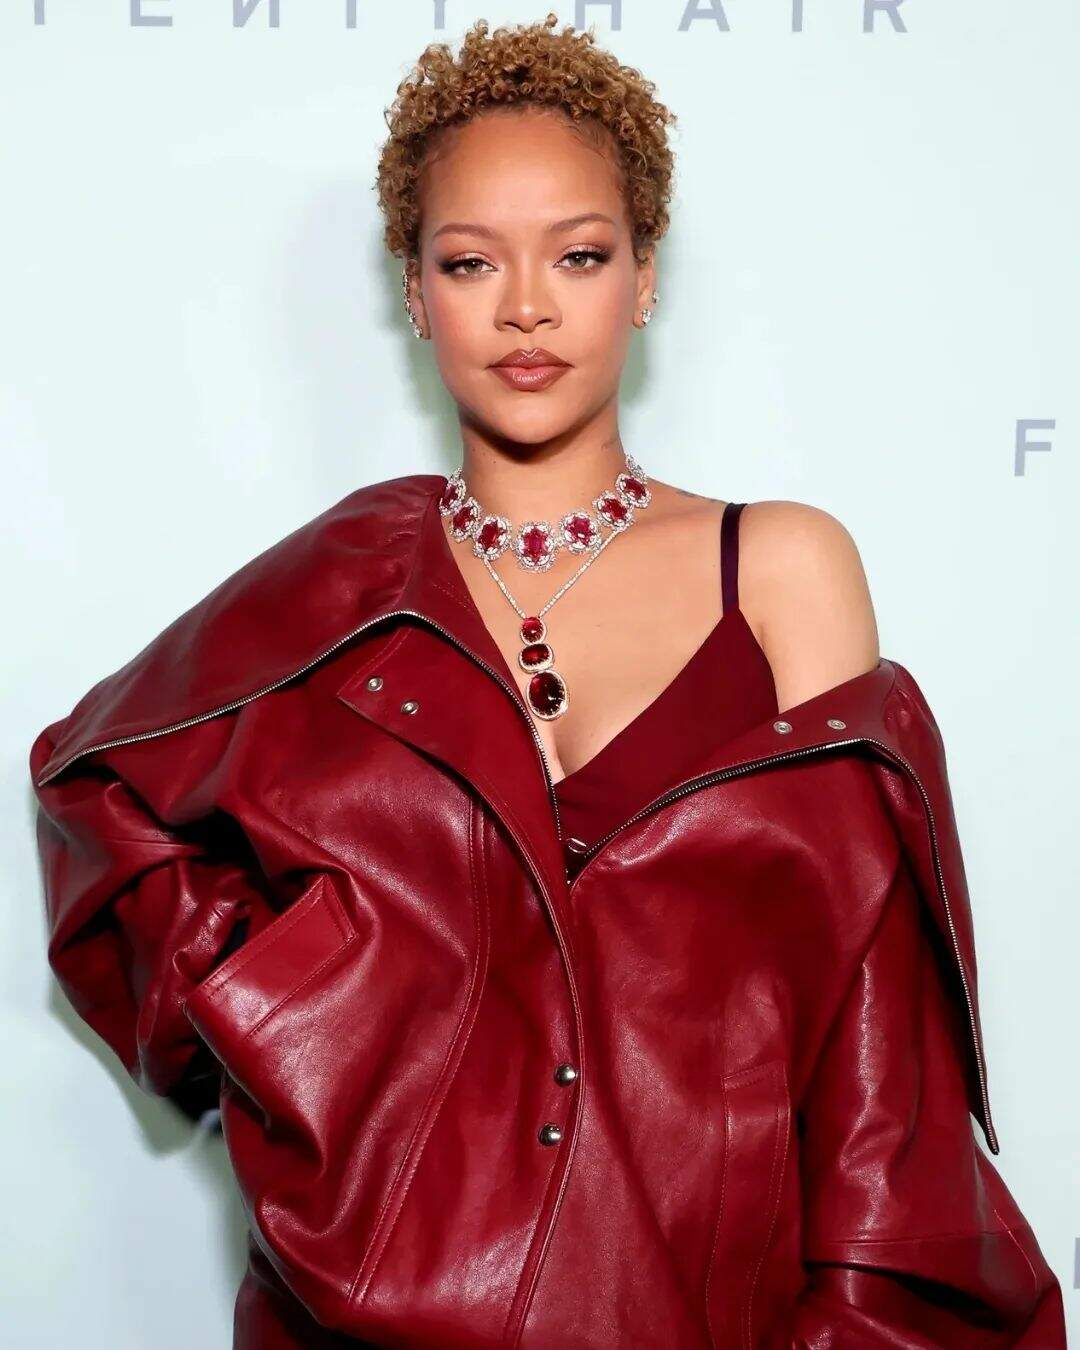  Rihanna surpreende ao surgir com os fios cacheados e curtíssimos em evento